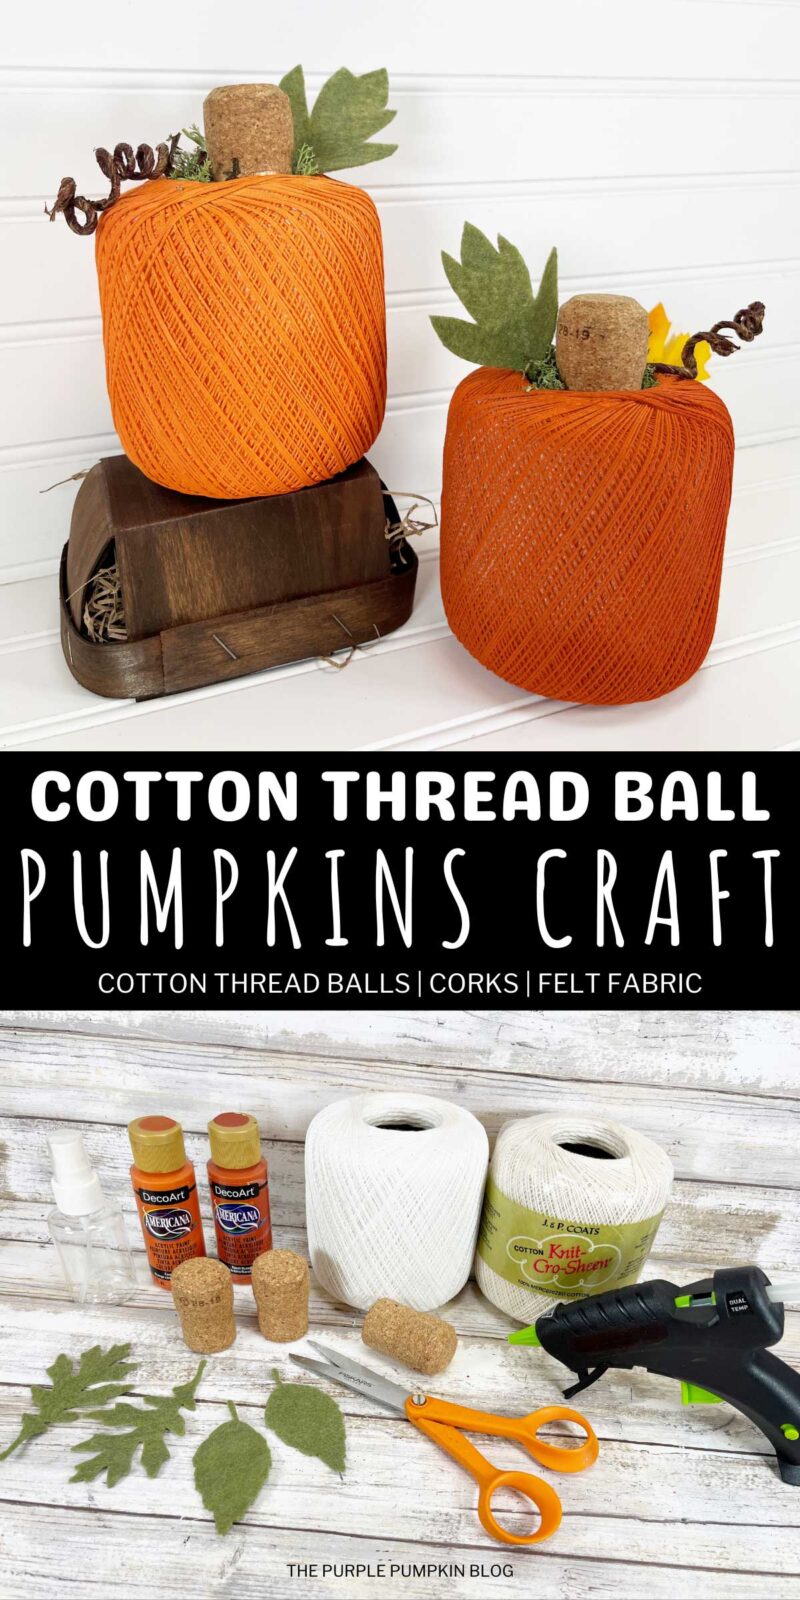 Cotton Thread Ball Pumpkins Craft